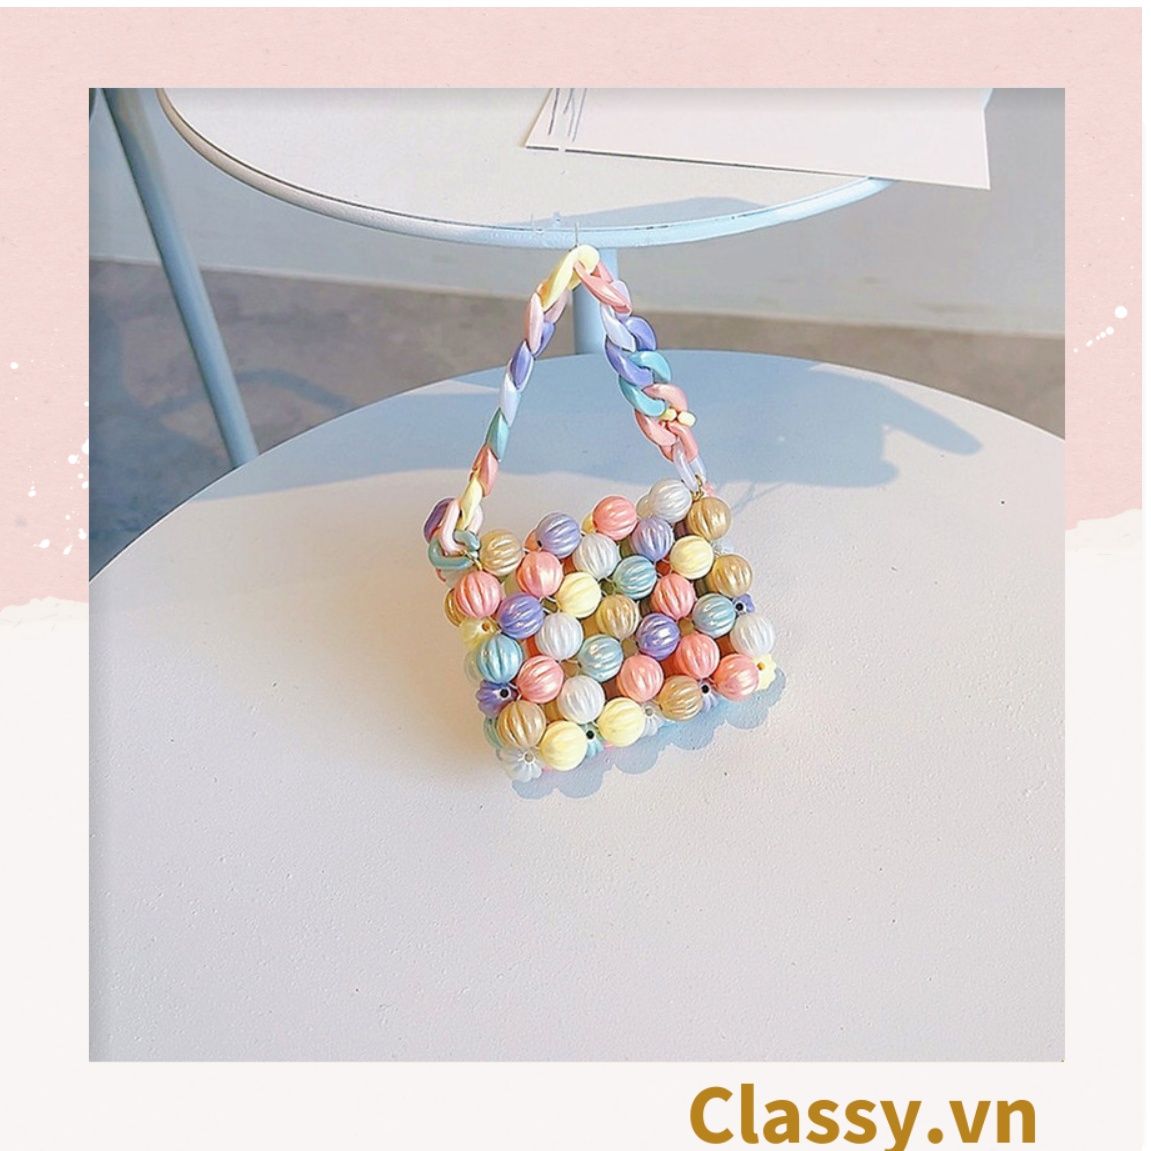  Túi xách tay mini kết bằng hạt nhựa nhiều màu nổi bật dành cho nữ T1180 